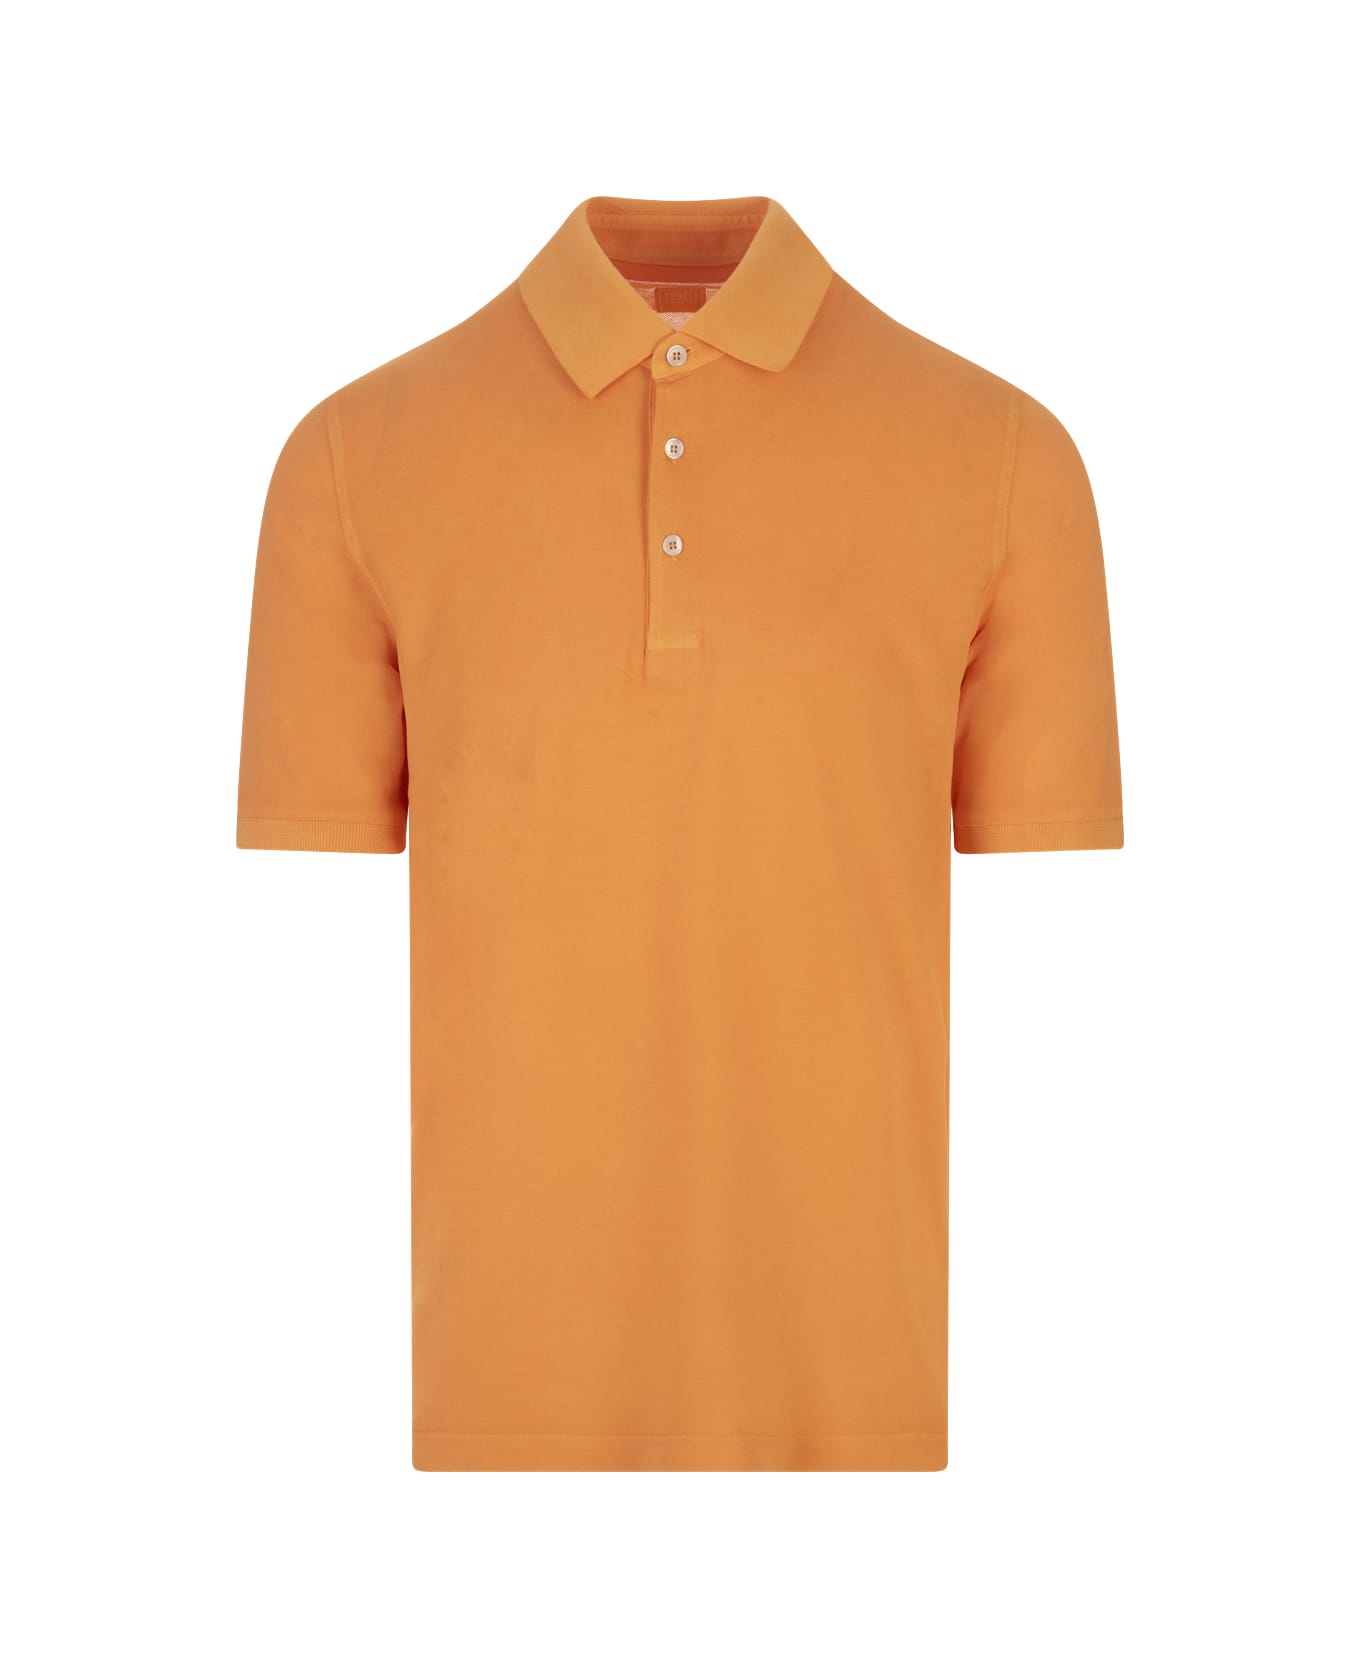 Fedeli Orange Light Cotton Piquet Polo Shirt - Orange